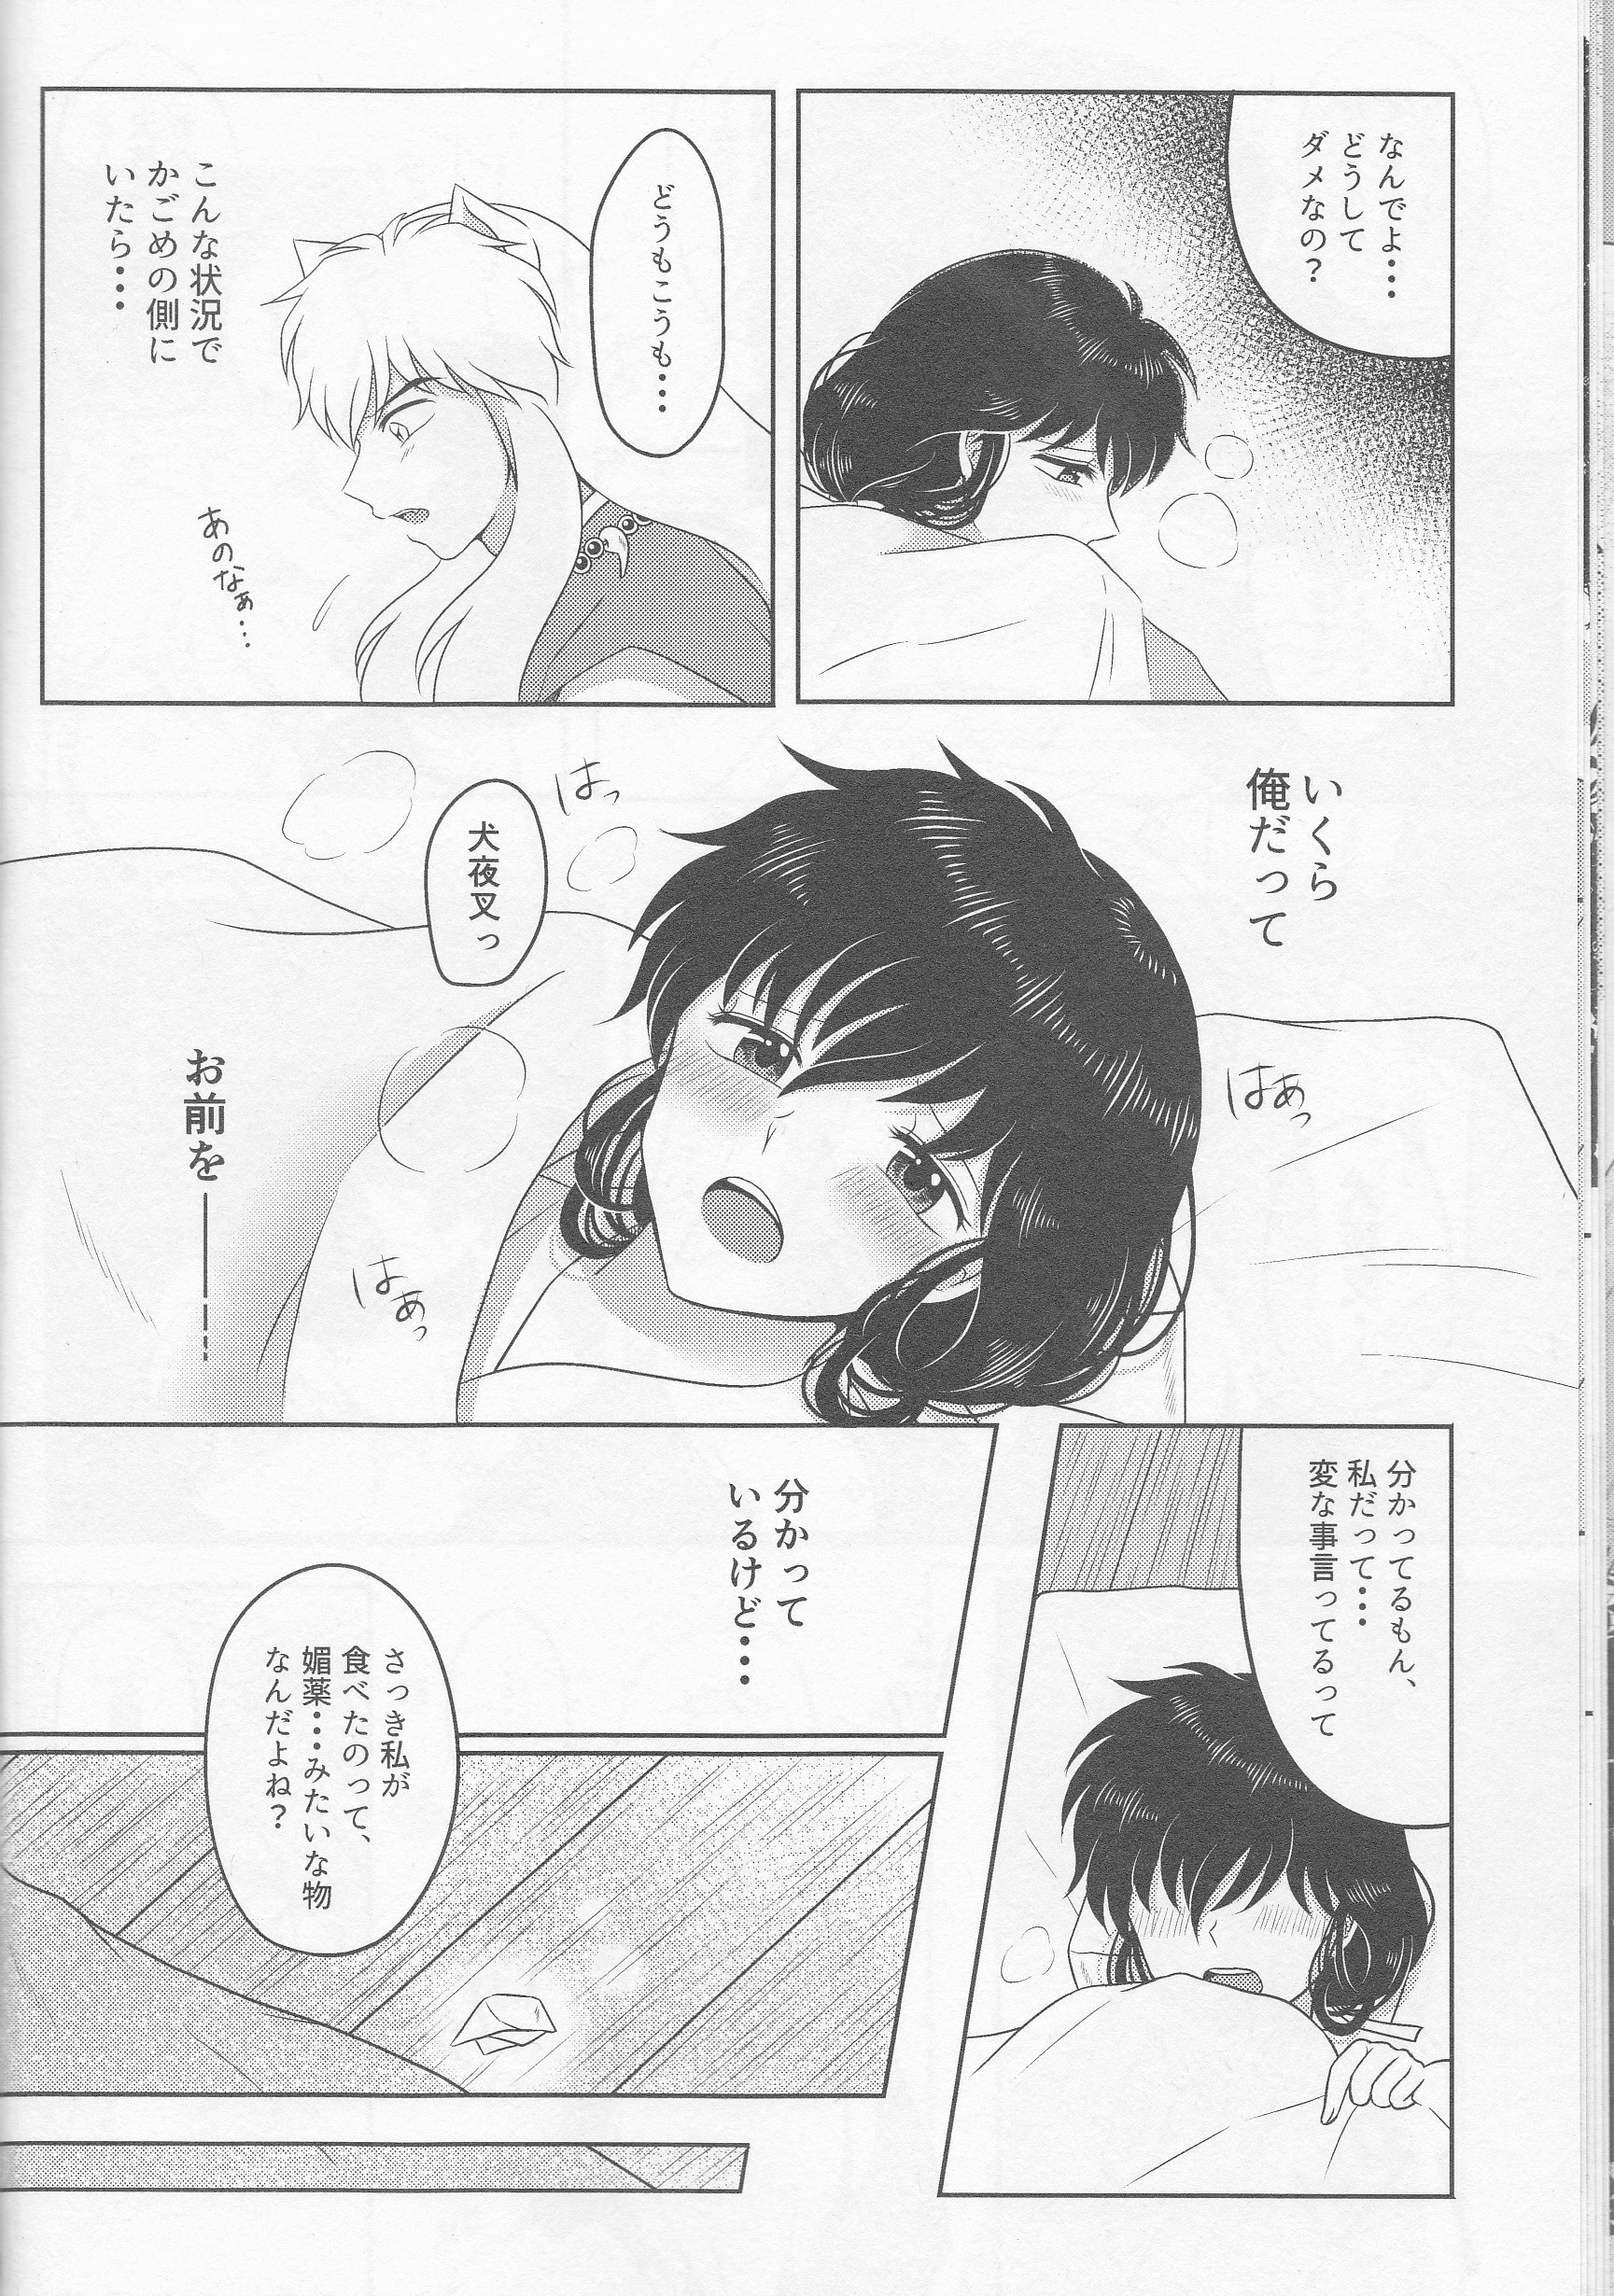 Koi Gusuri - Love drug hentai manga picture 11